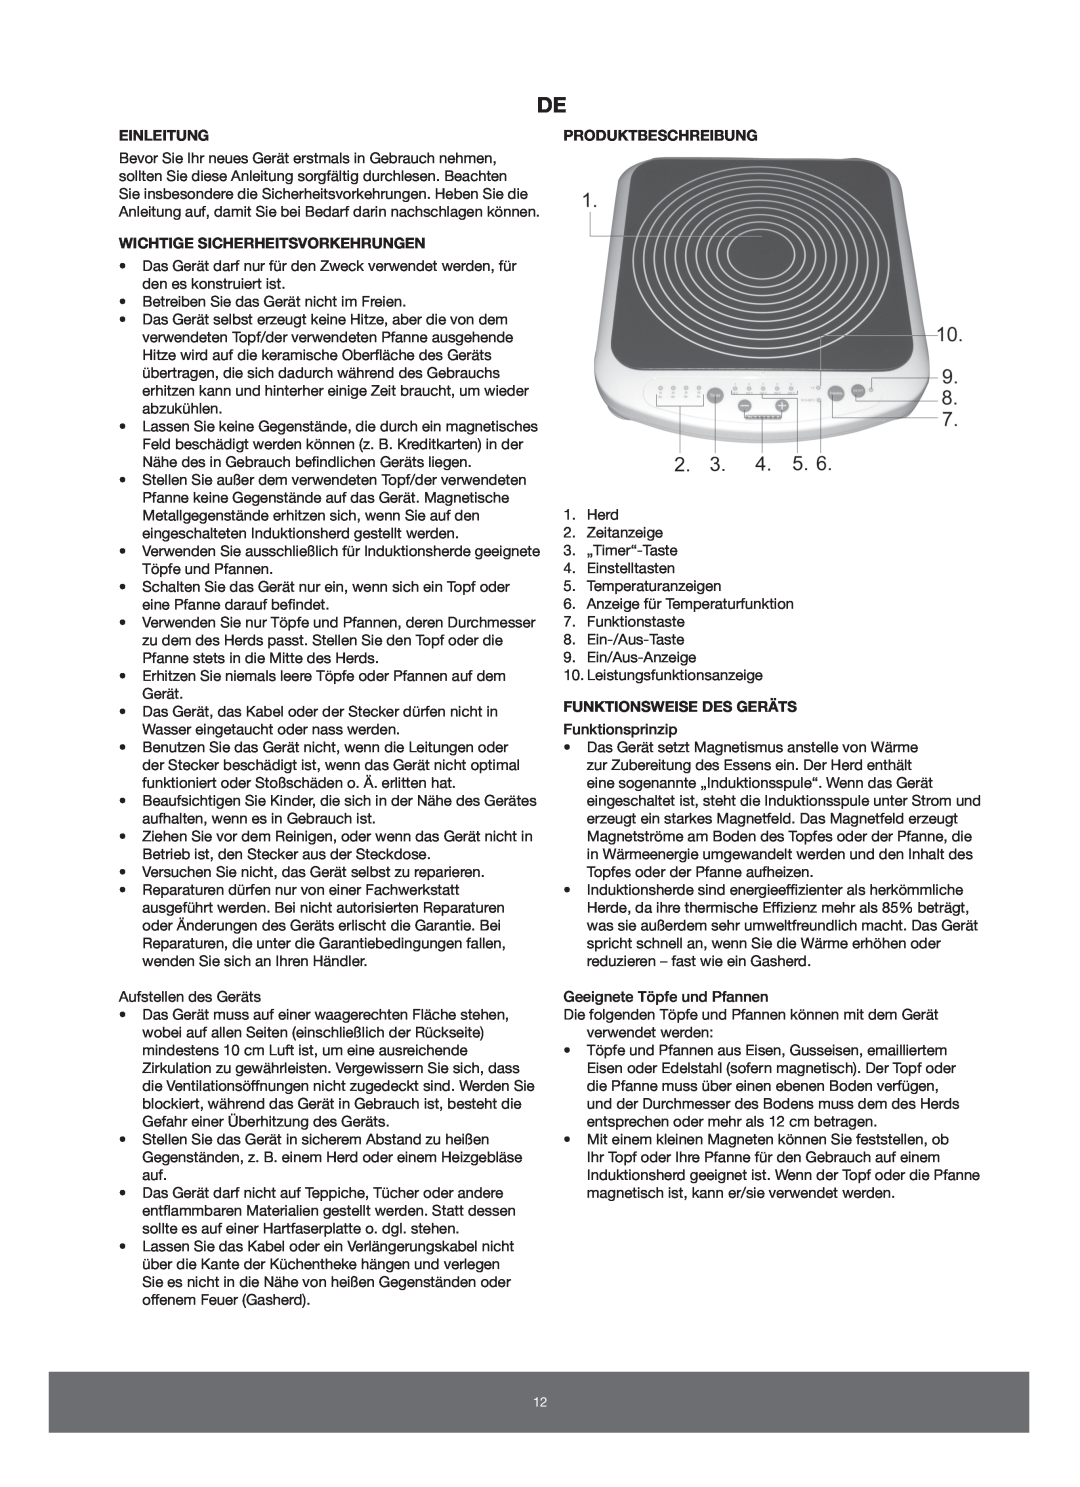 Melissa 650-005/006 manual Einleitung, Wichtige Sicherheitsvorkehrungen, Produktbeschreibung, Funktionsweise Des Geräts 